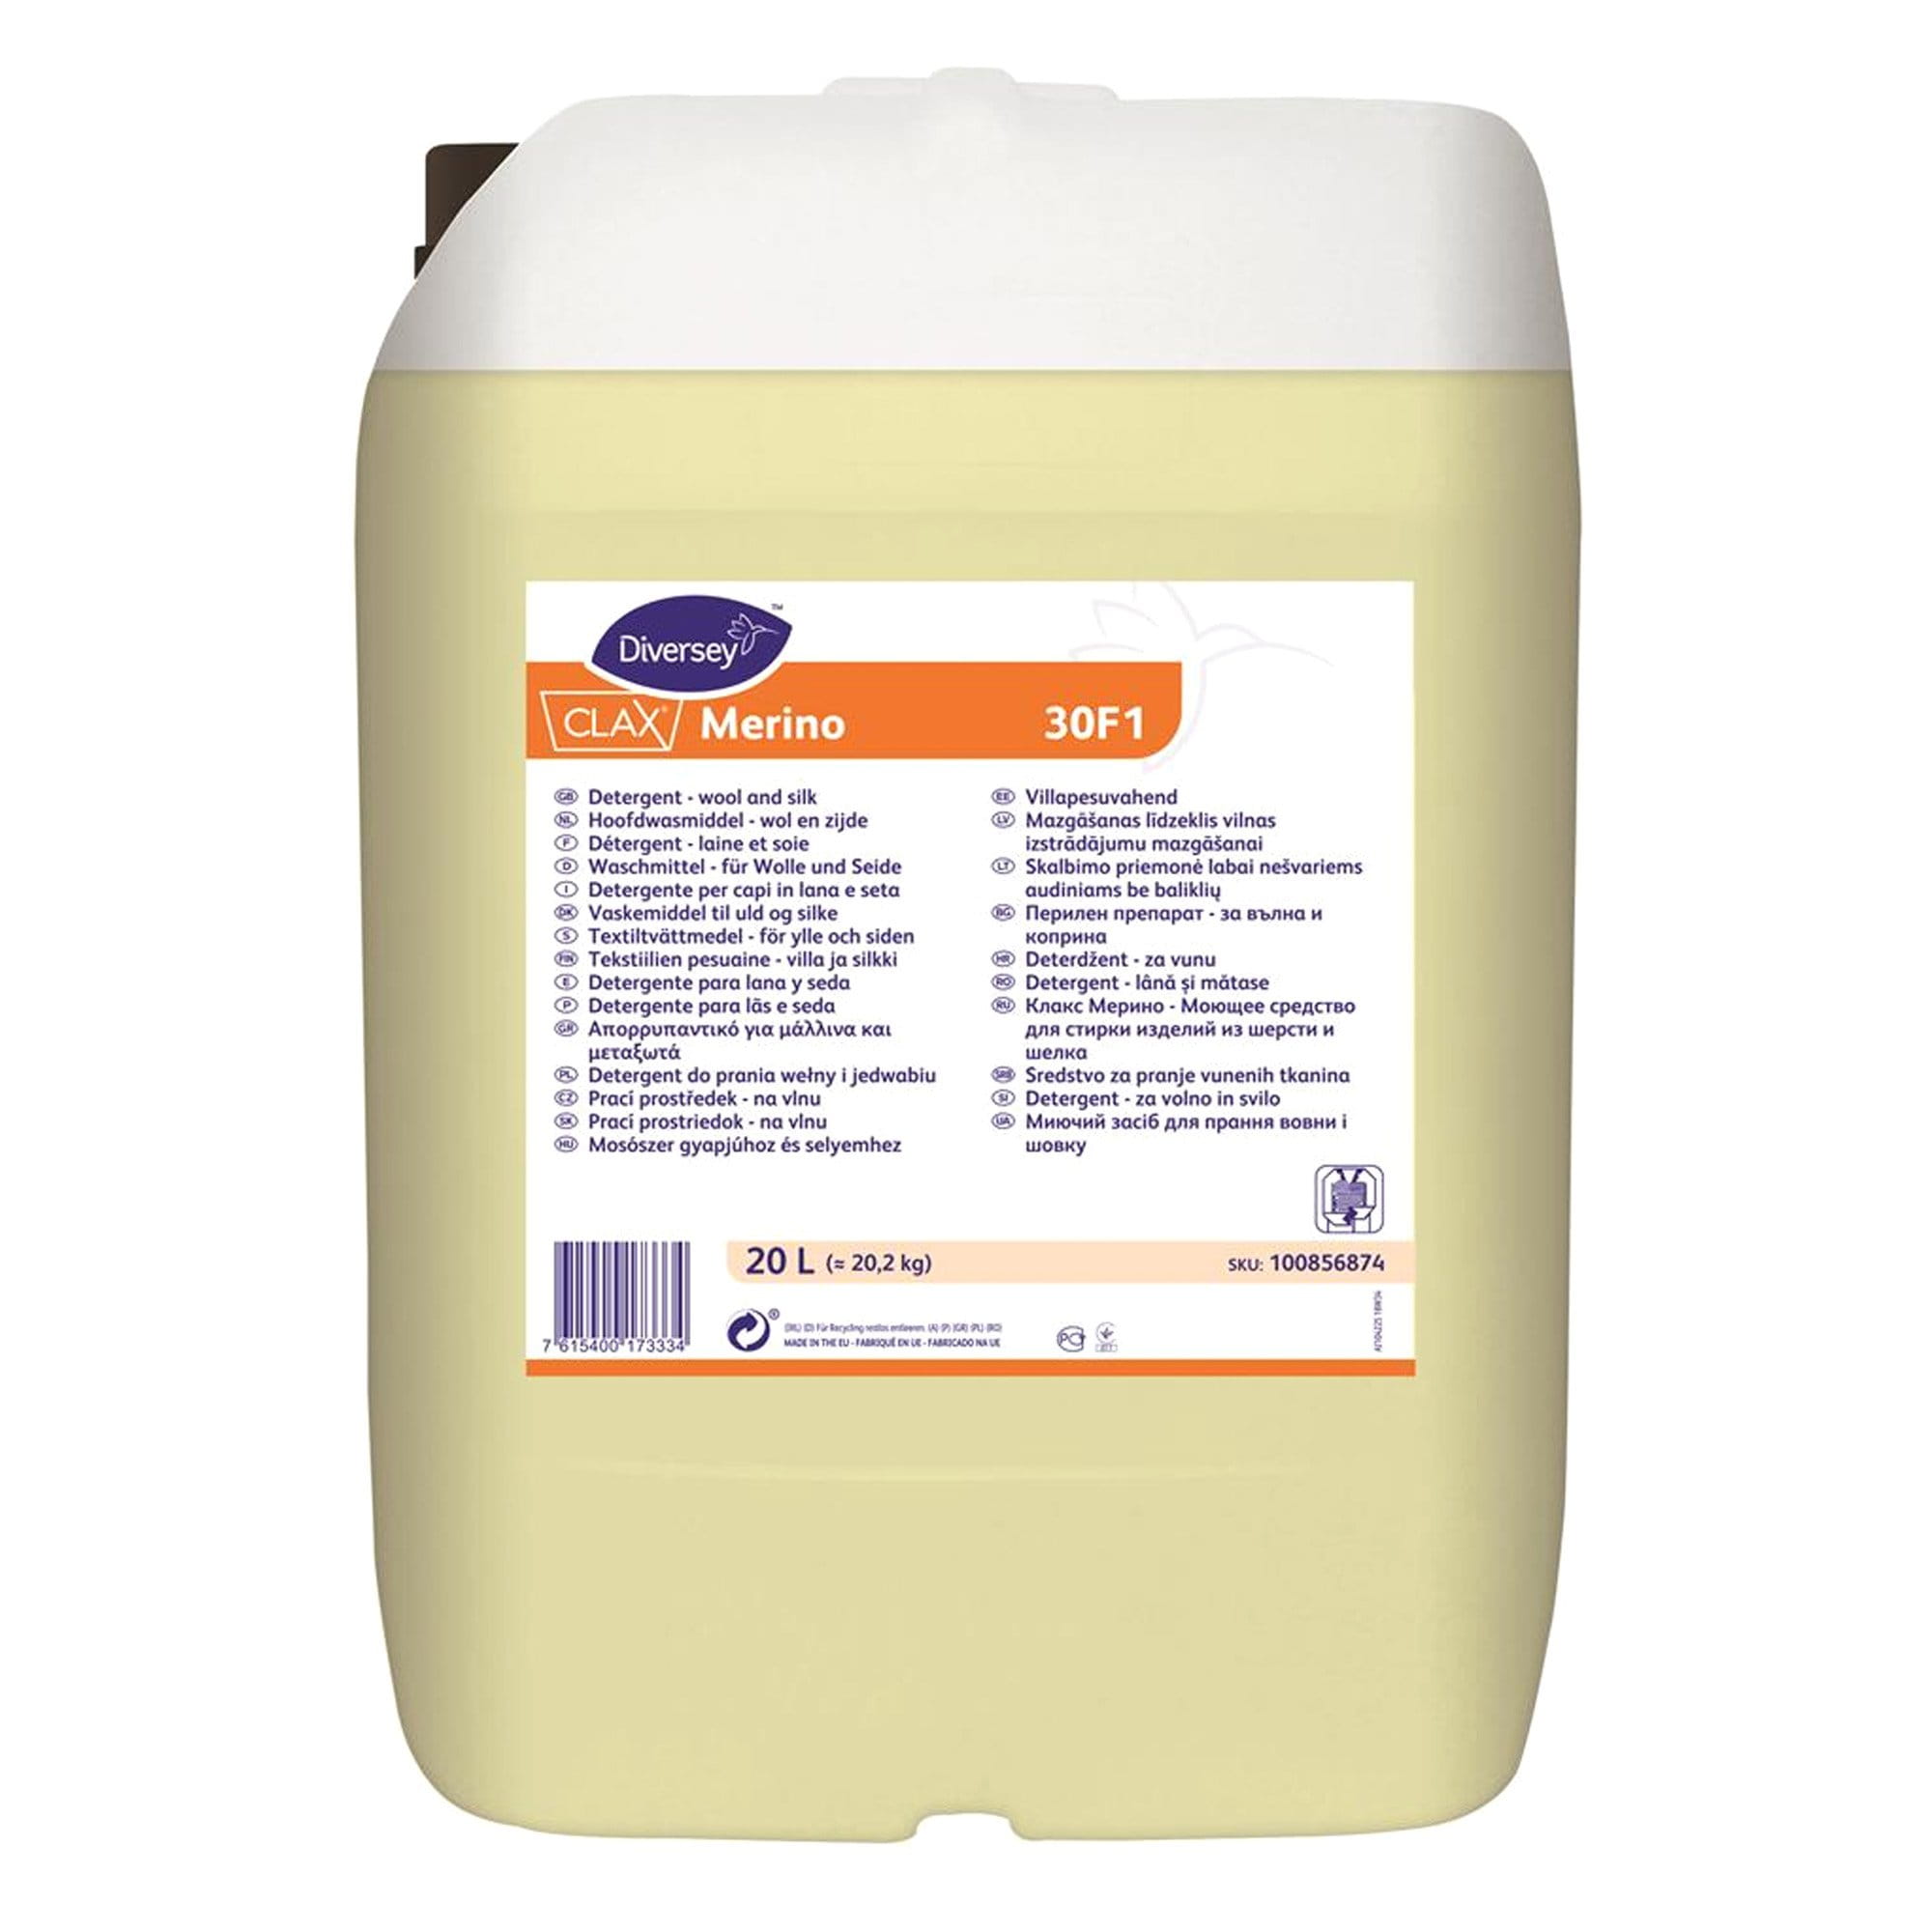 Clax Merino 30F1 flüssiges Feinwaschmittel 20 Liter Kanister 100856874_1